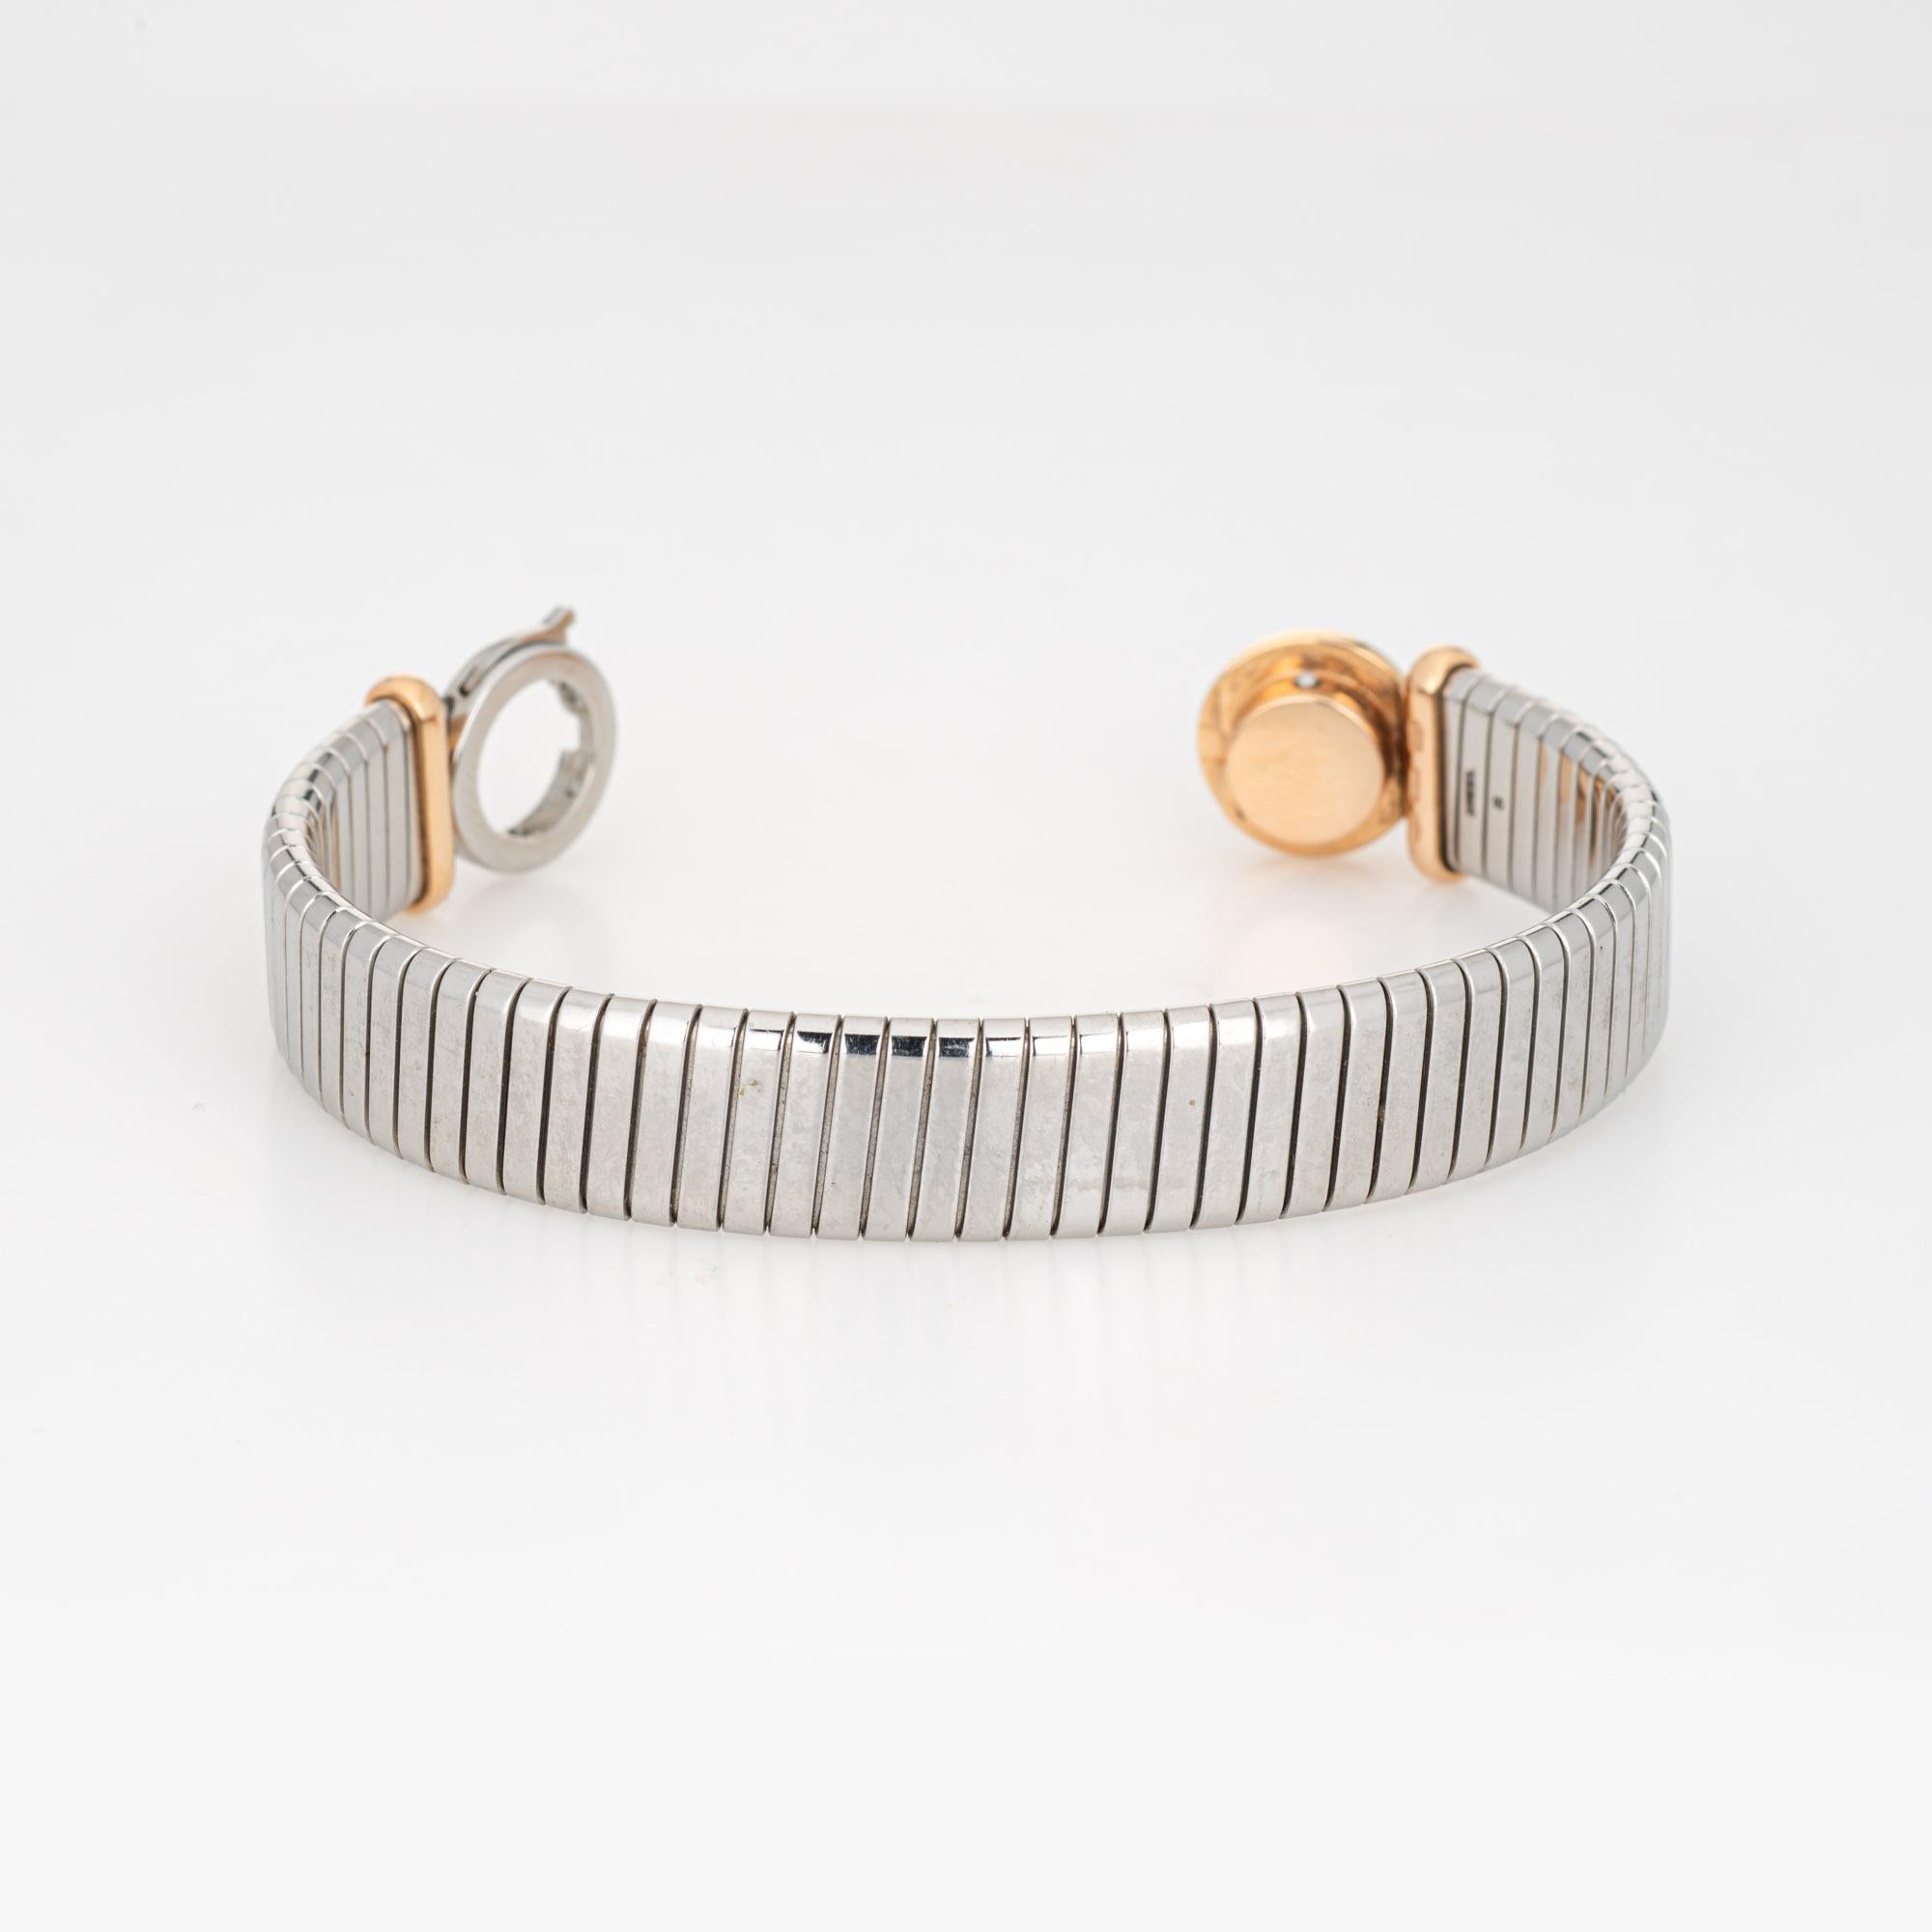 Stilvolles Bulgari 'Tubogas'-Armband aus 18 Karat Gelbgold und Edelstahl (ca. 1990er Jahre).  

Das Armband hat die Form einer flexiblen Gasleitung und ist mit einem onyxbesetzten Ende aus 18 Karat Gold versehen. Die Herstellung des Tubogas-Designs